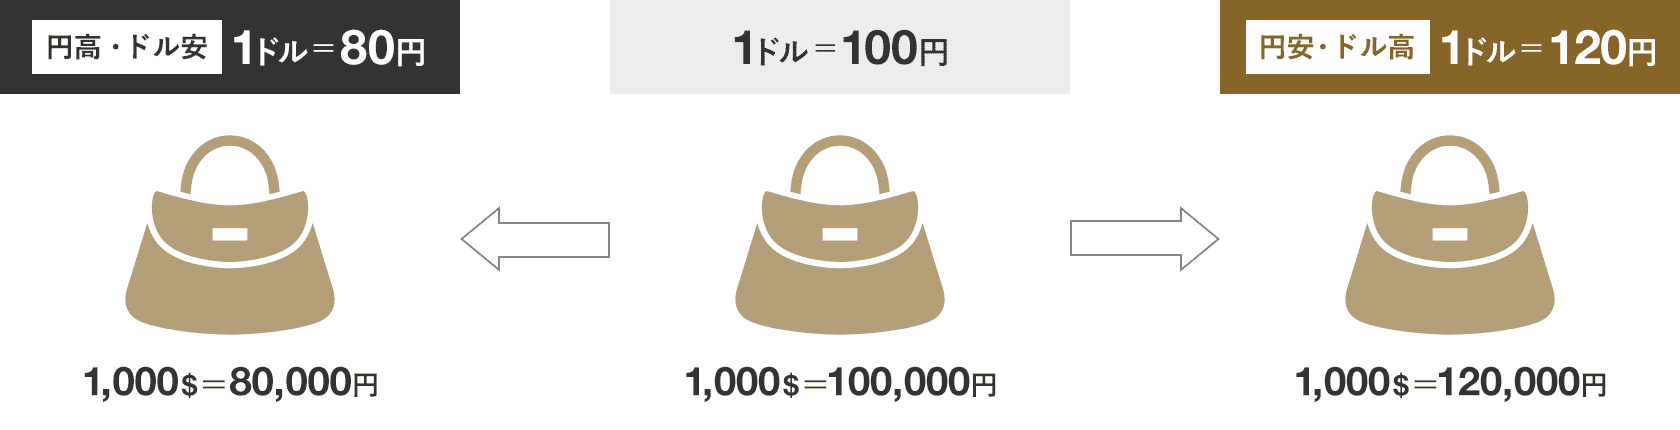 円安・円高時の価格イメージ